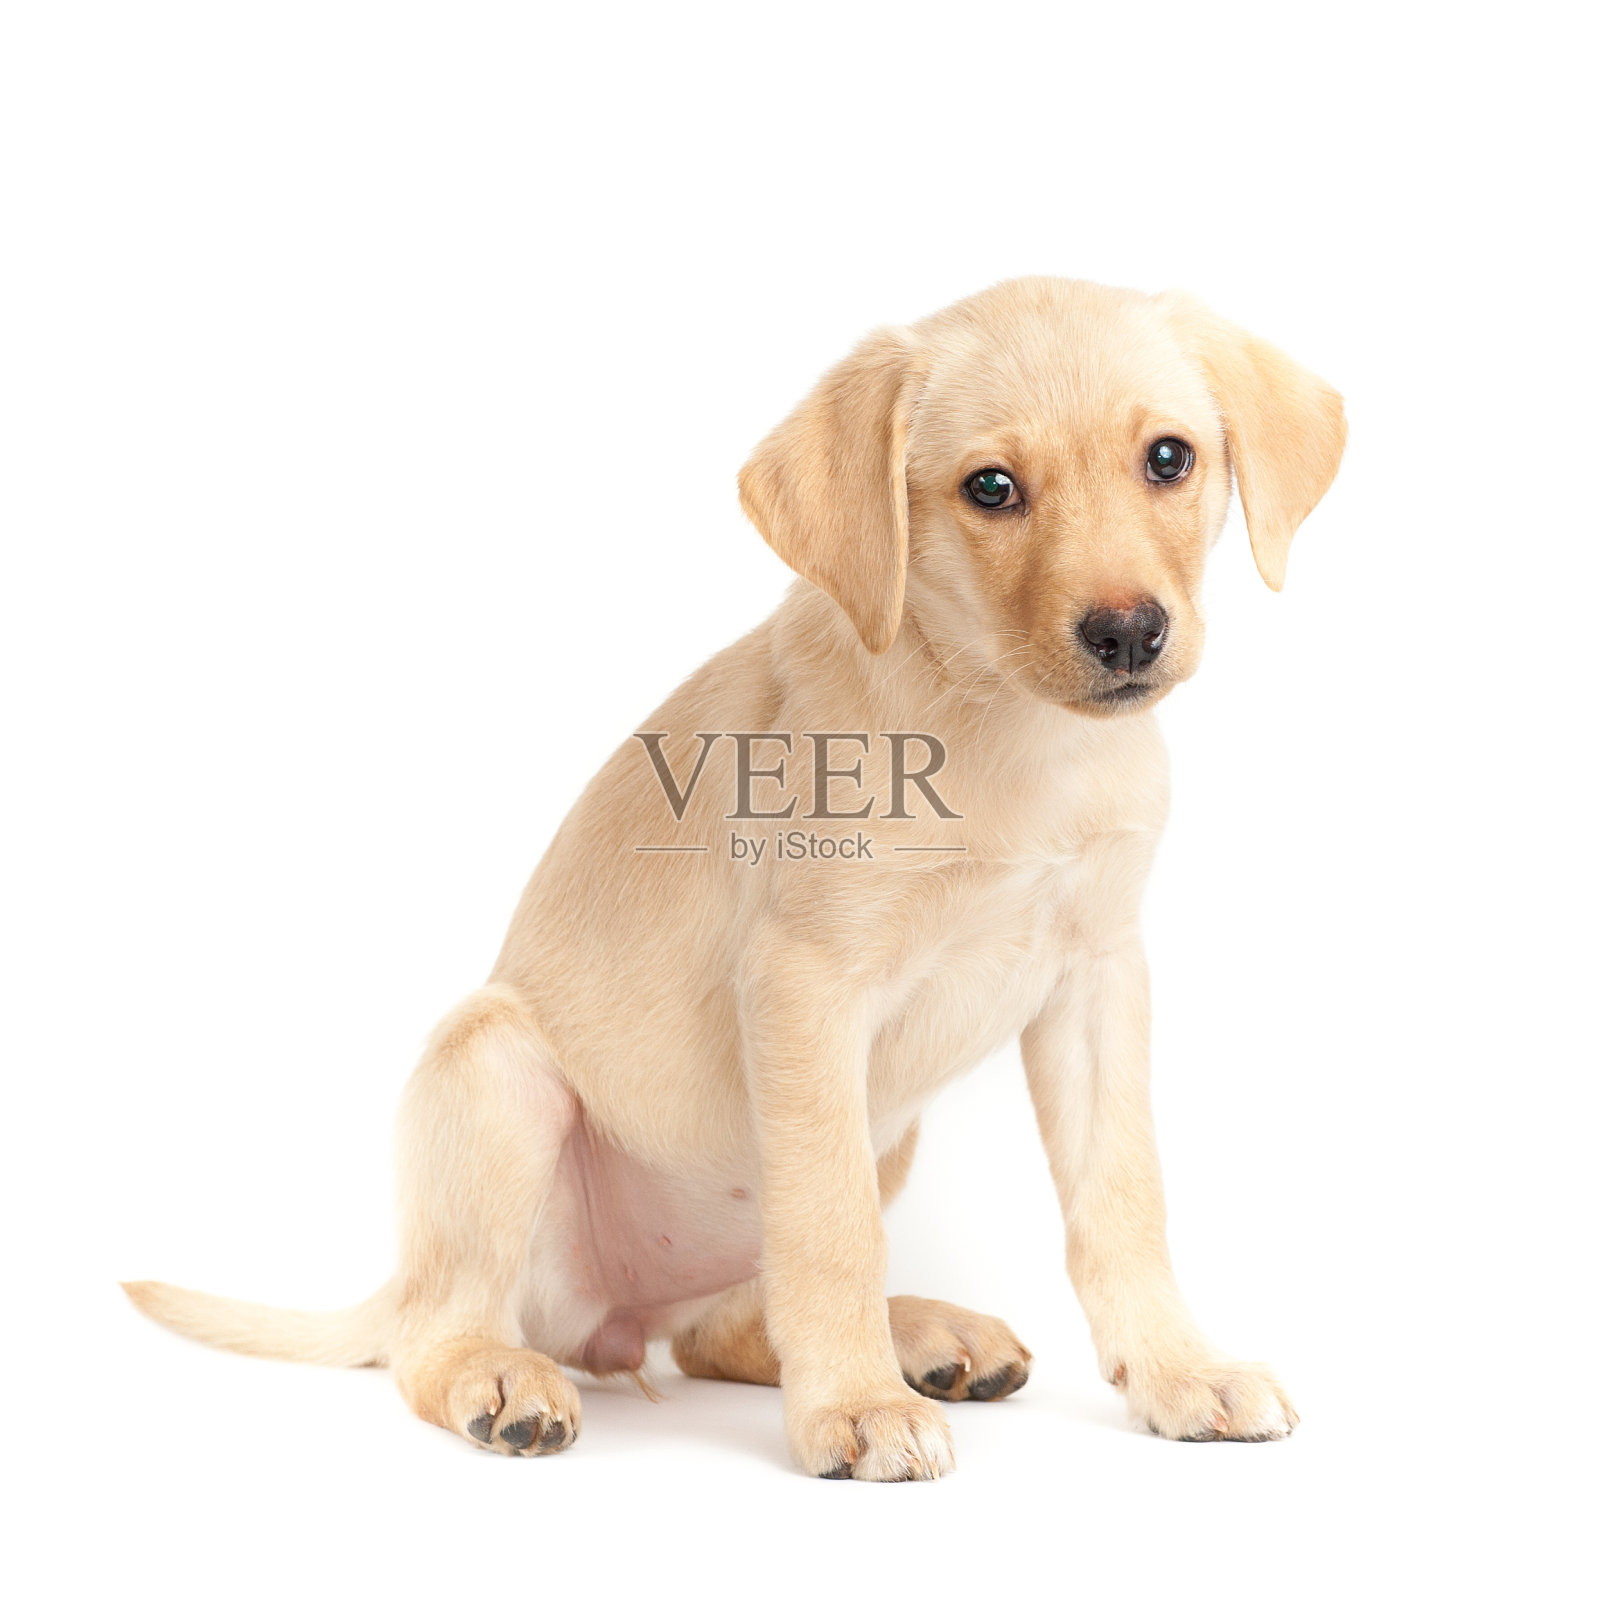 白色背景上一只可爱的拉布拉多猎犬小狗的肖像照片摄影图片